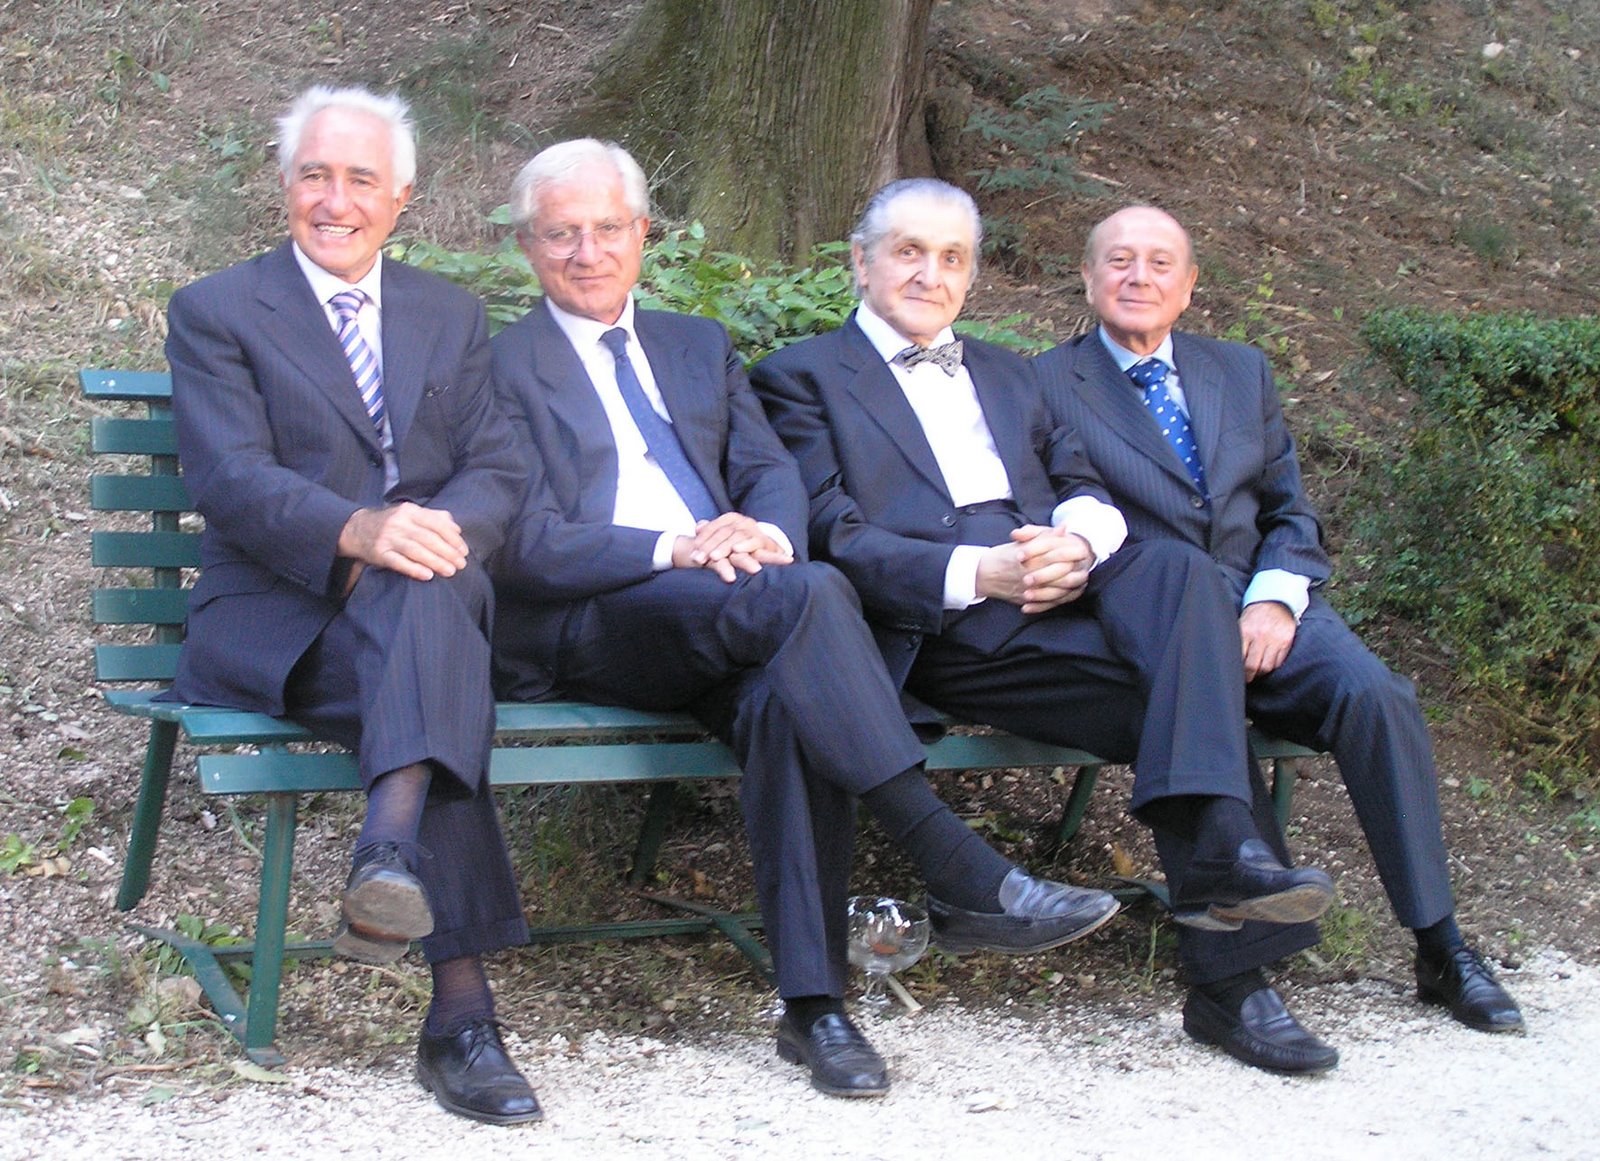 [4+men+on+bench.jpg]